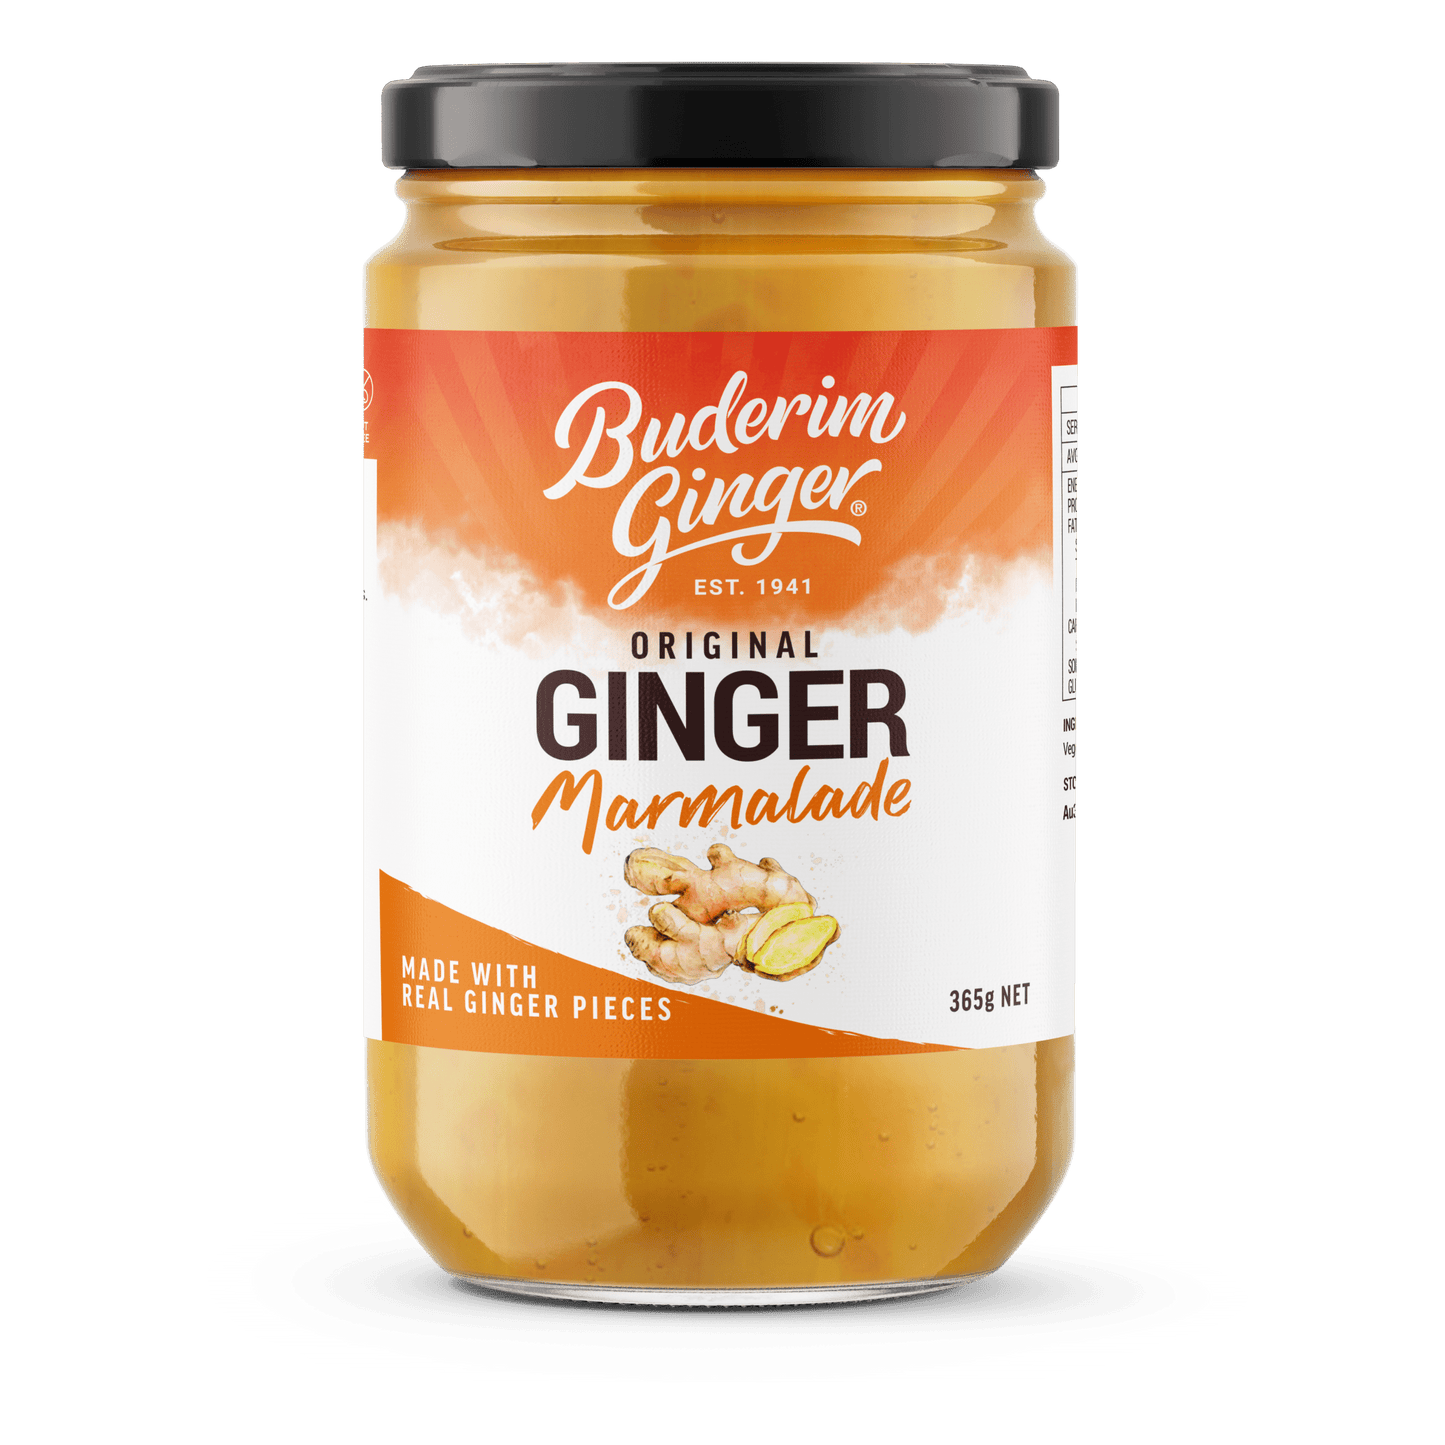 Buderim Ginger Marmalade Original